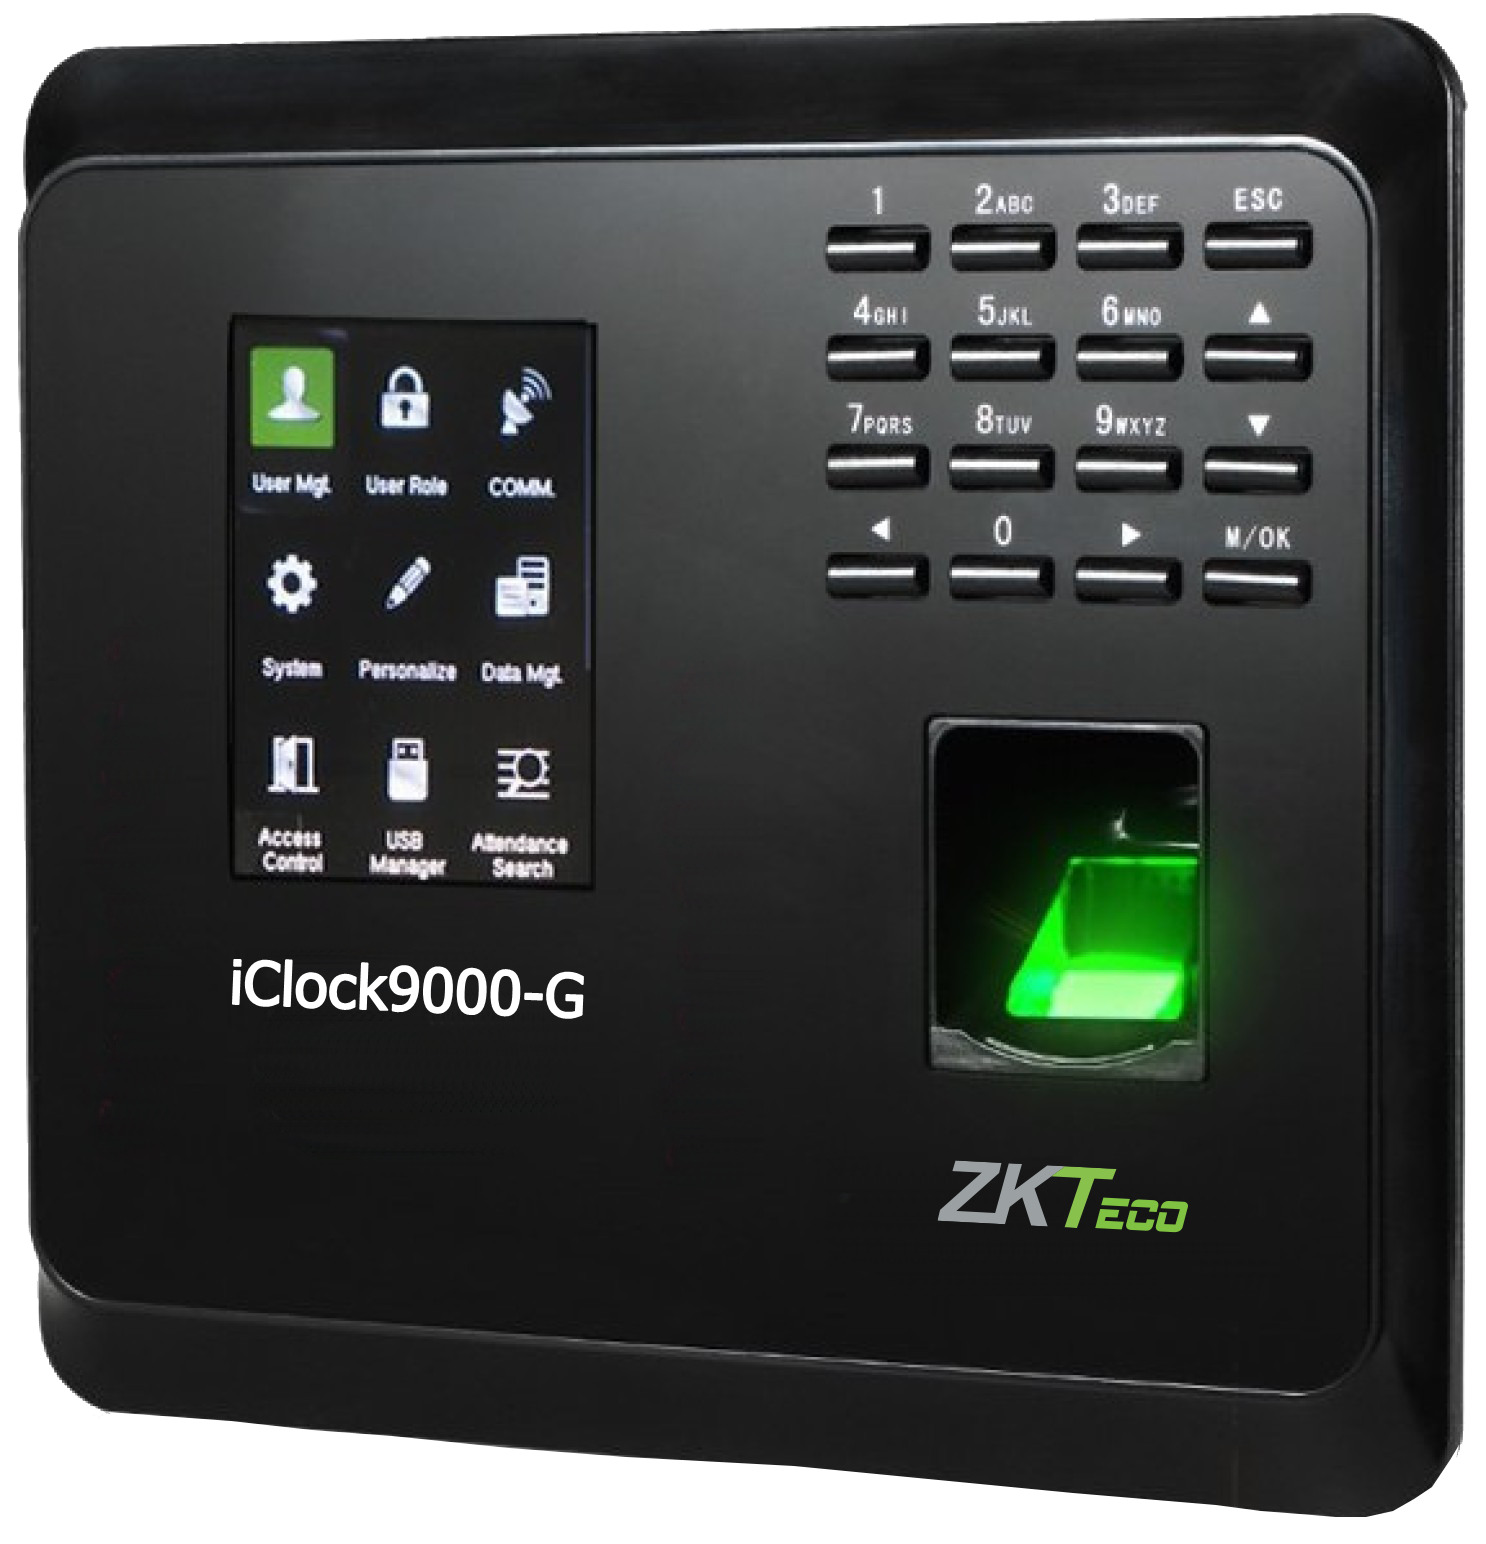 Máy chấm công vân tay Zkteco iClock9000-G (GPRS)